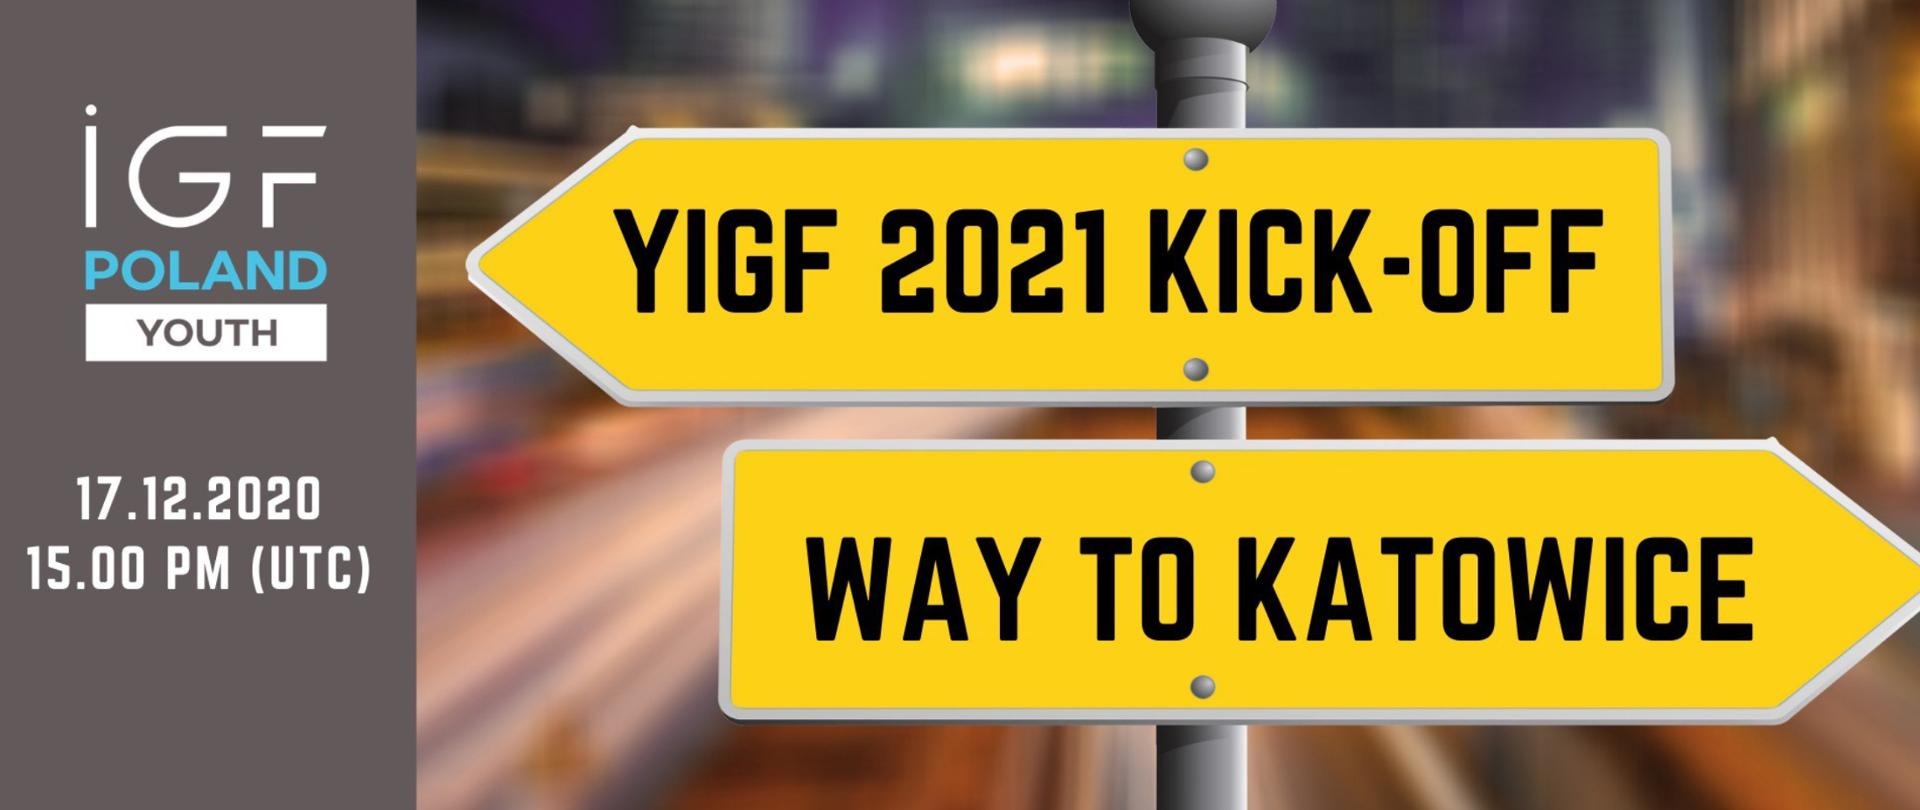 Dwa żółte znaki drogowe (w kształcie strzałki). Na górnym, skierowanym w lewo tekst: YIGF 2021 KICK-OFF; na dolnym, skierowanym w prawo tekst: Way to Katowice. Z lewej strony całej grafiki, na szarym tle, tekst: IGF Poland Youth, 17.12.2020, 15.00 PM (UTC).